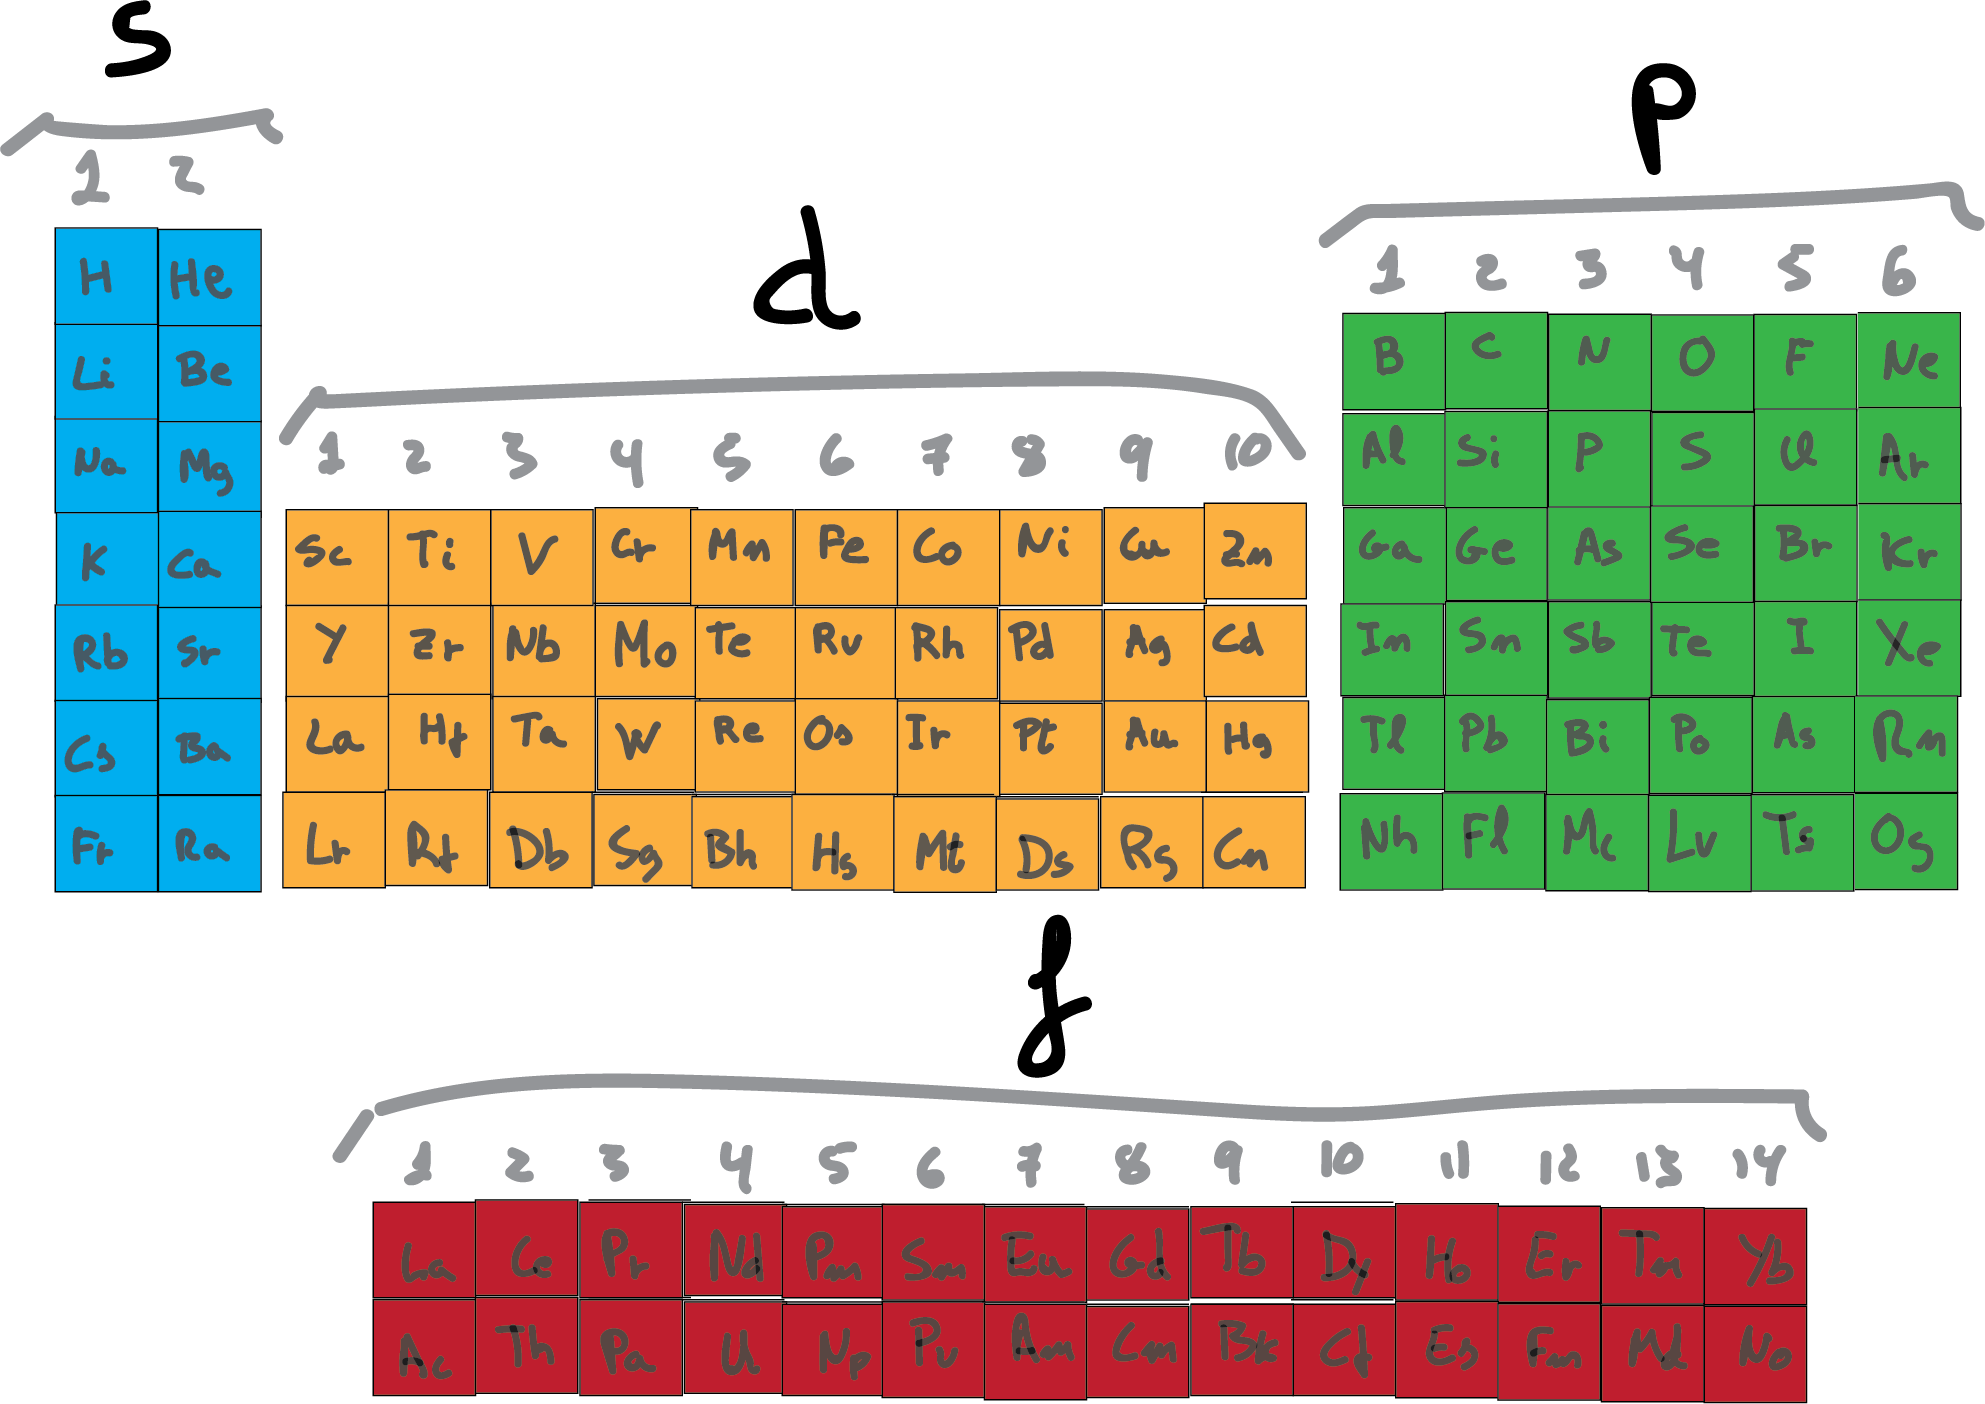 configuracion electronica tabla periodica orbitales s p d f